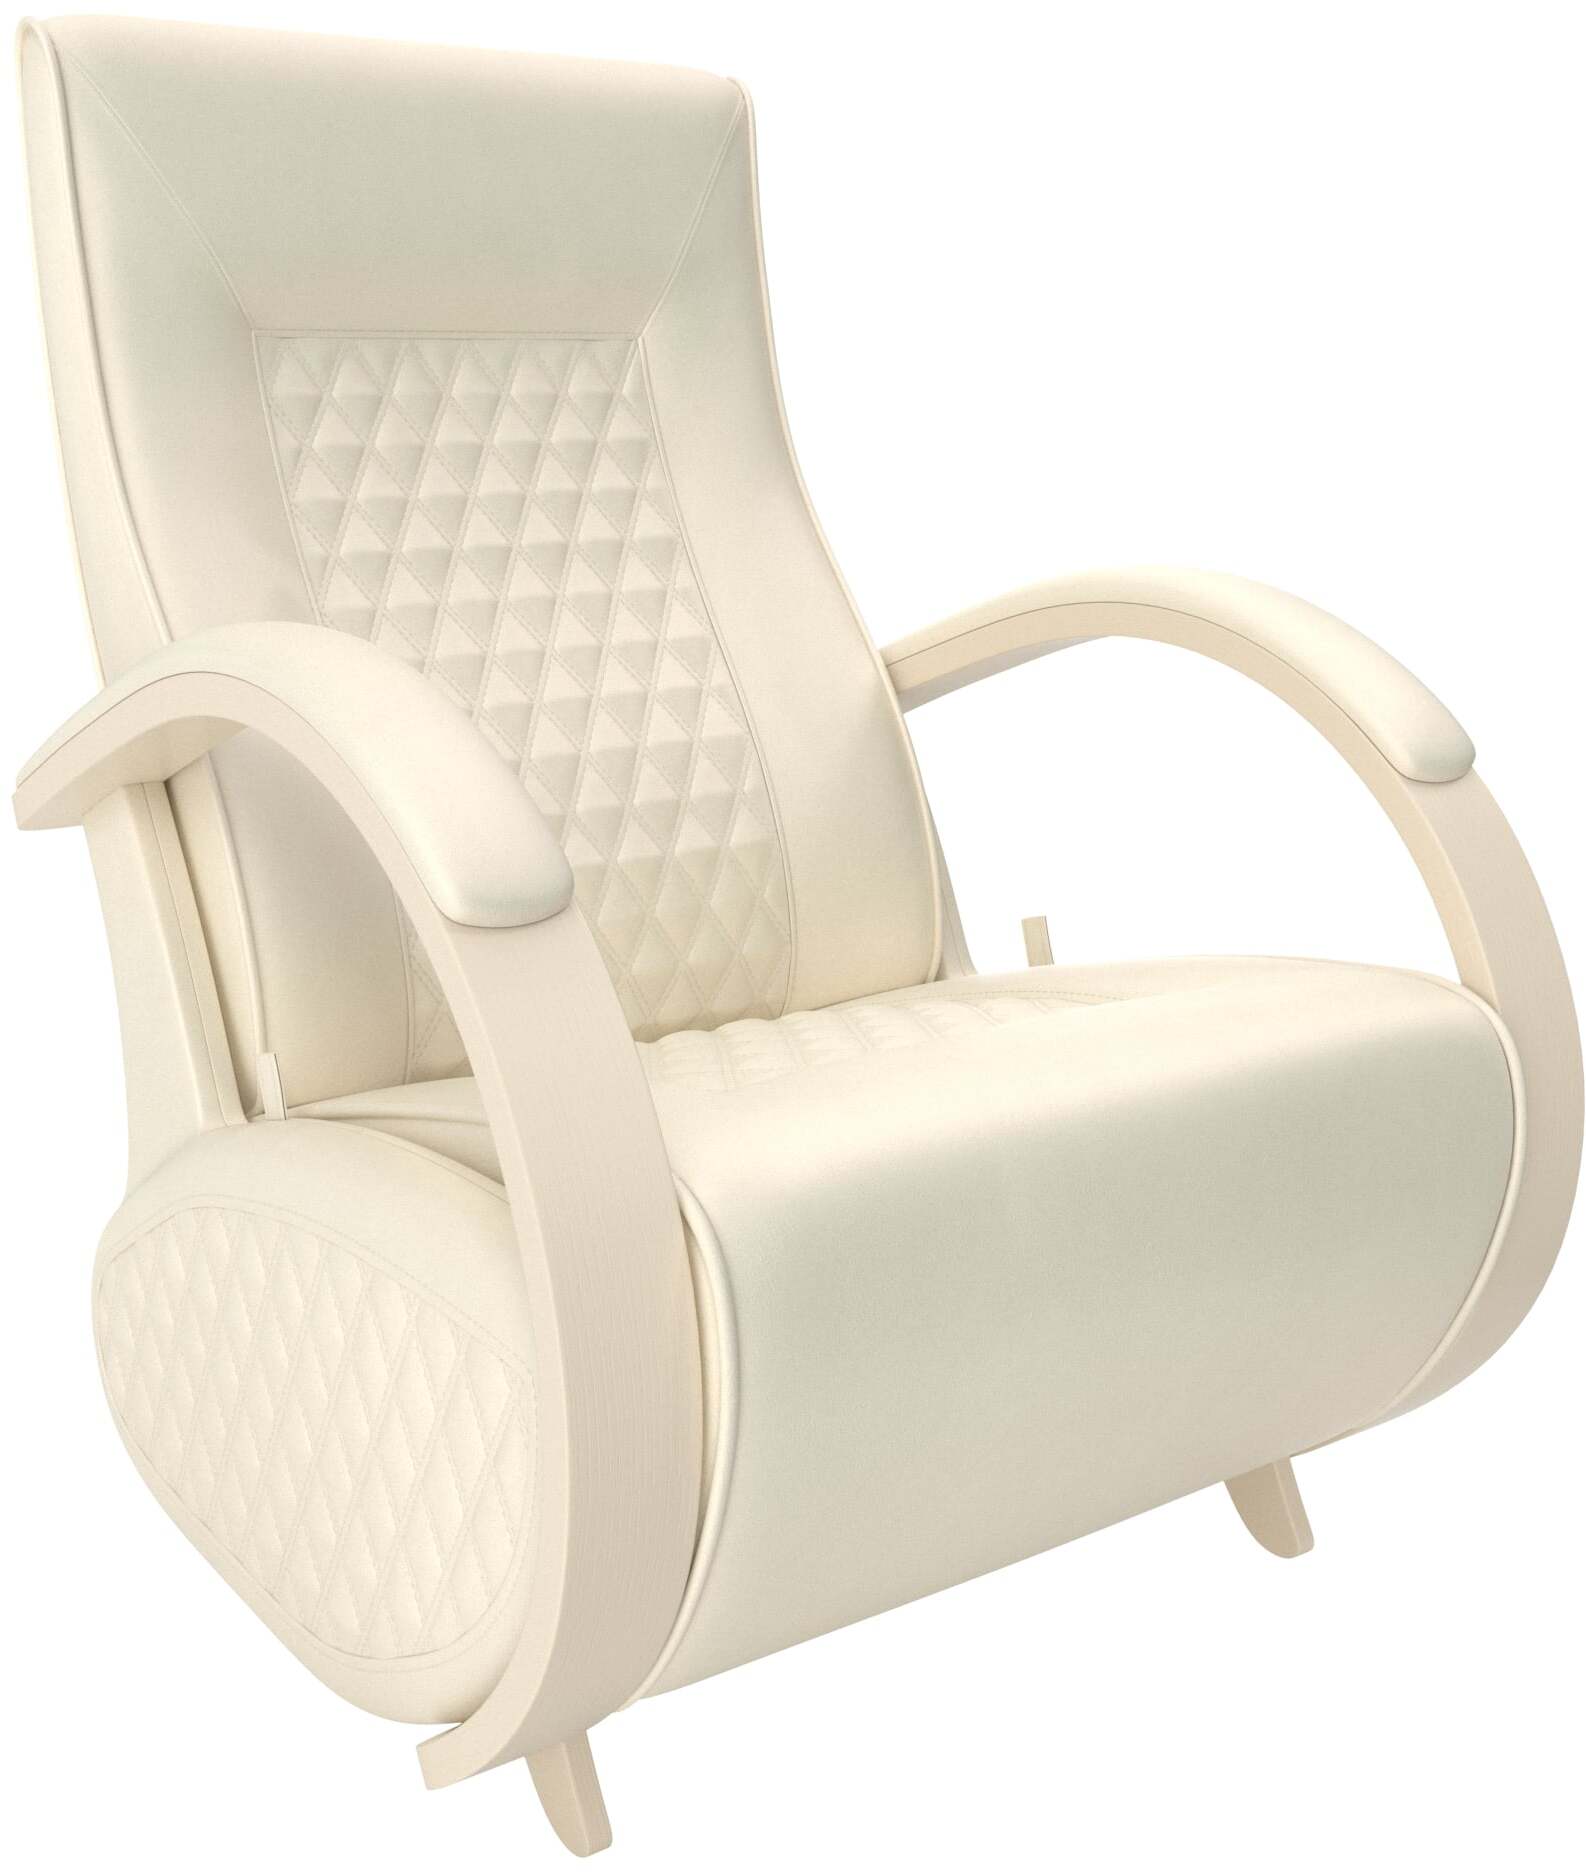 Кресло-качалка глайдер Balance-3 с накладками фото 1